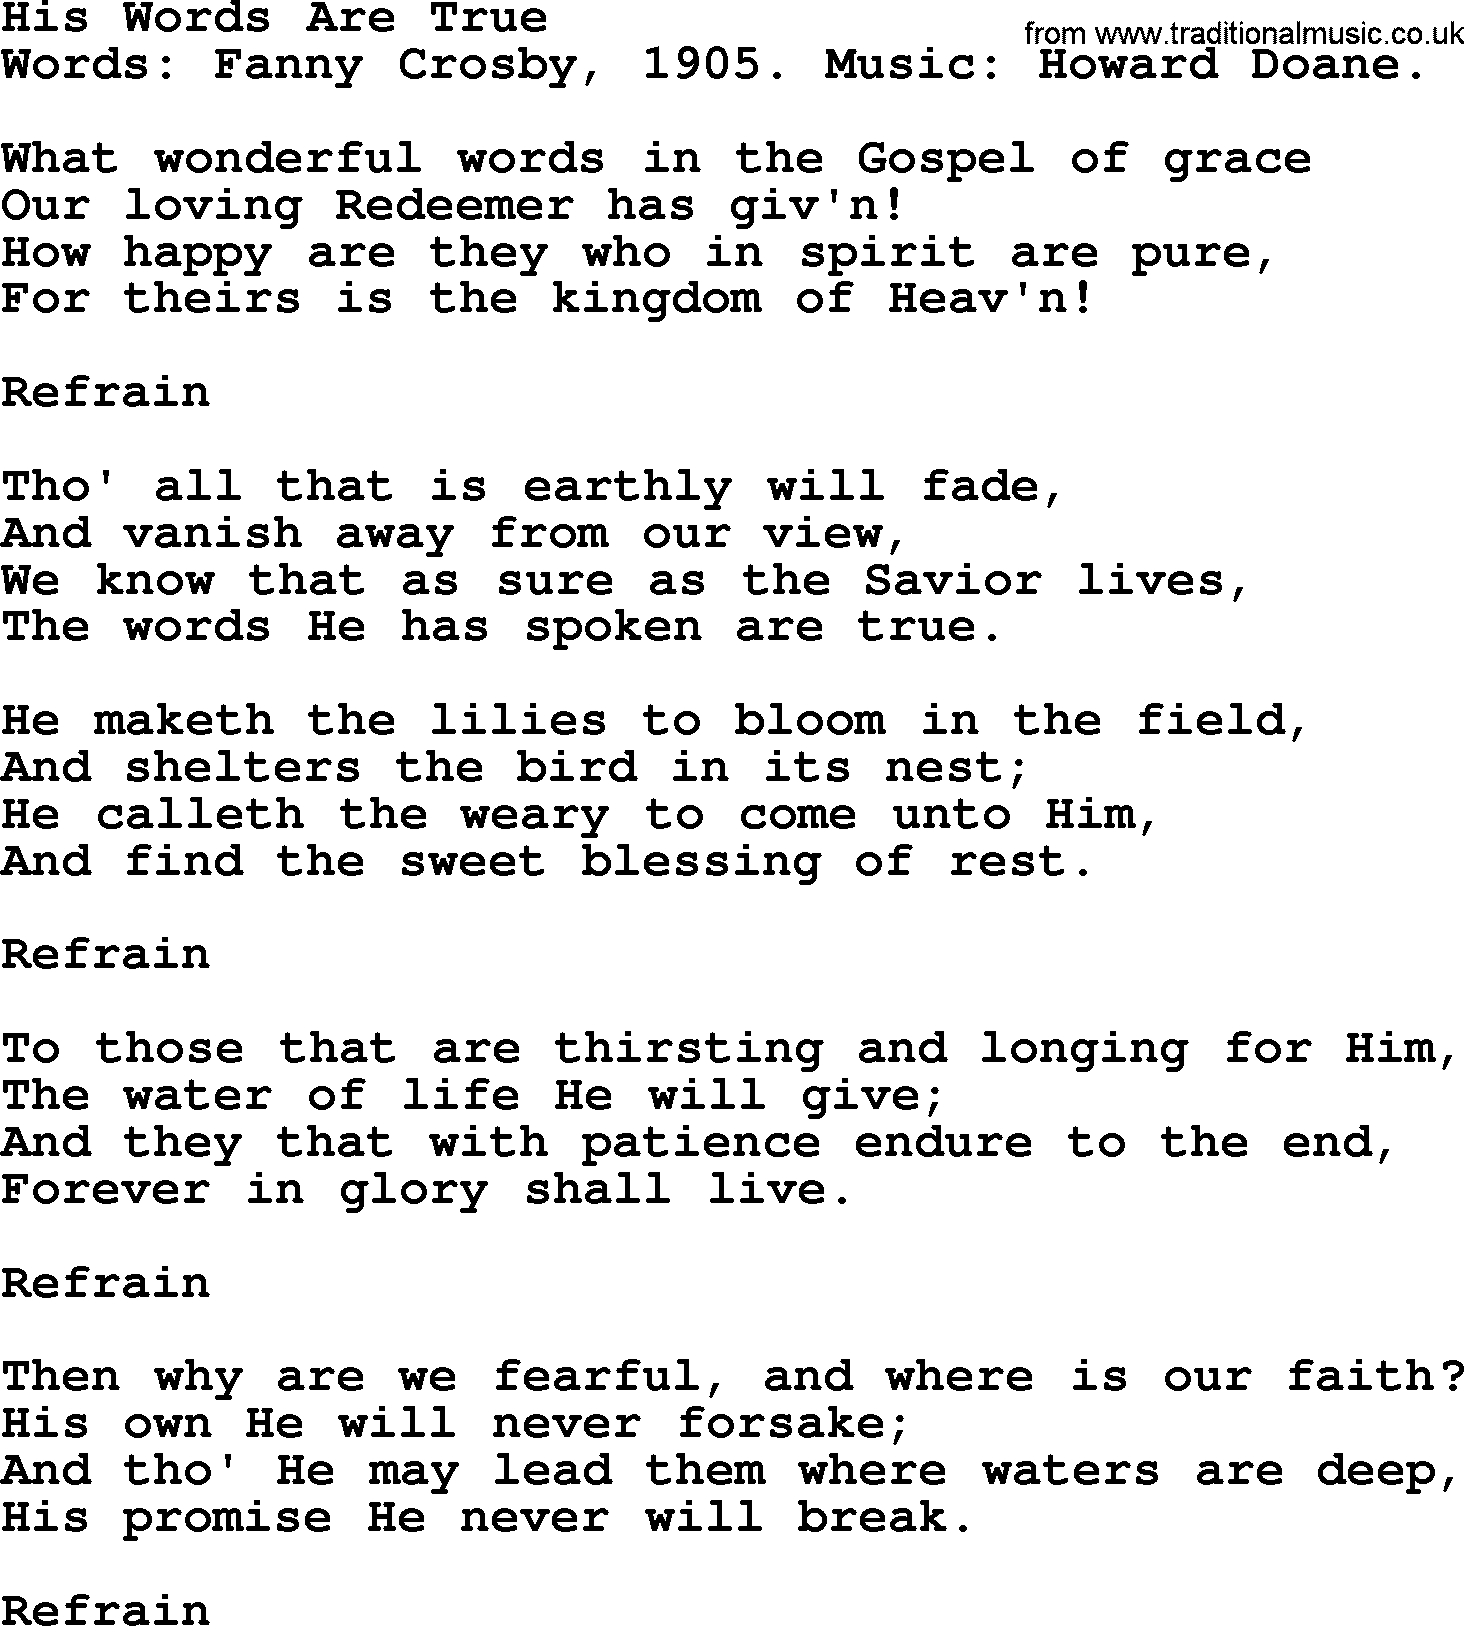 Fanny Crosby song: His Words Are True, lyrics